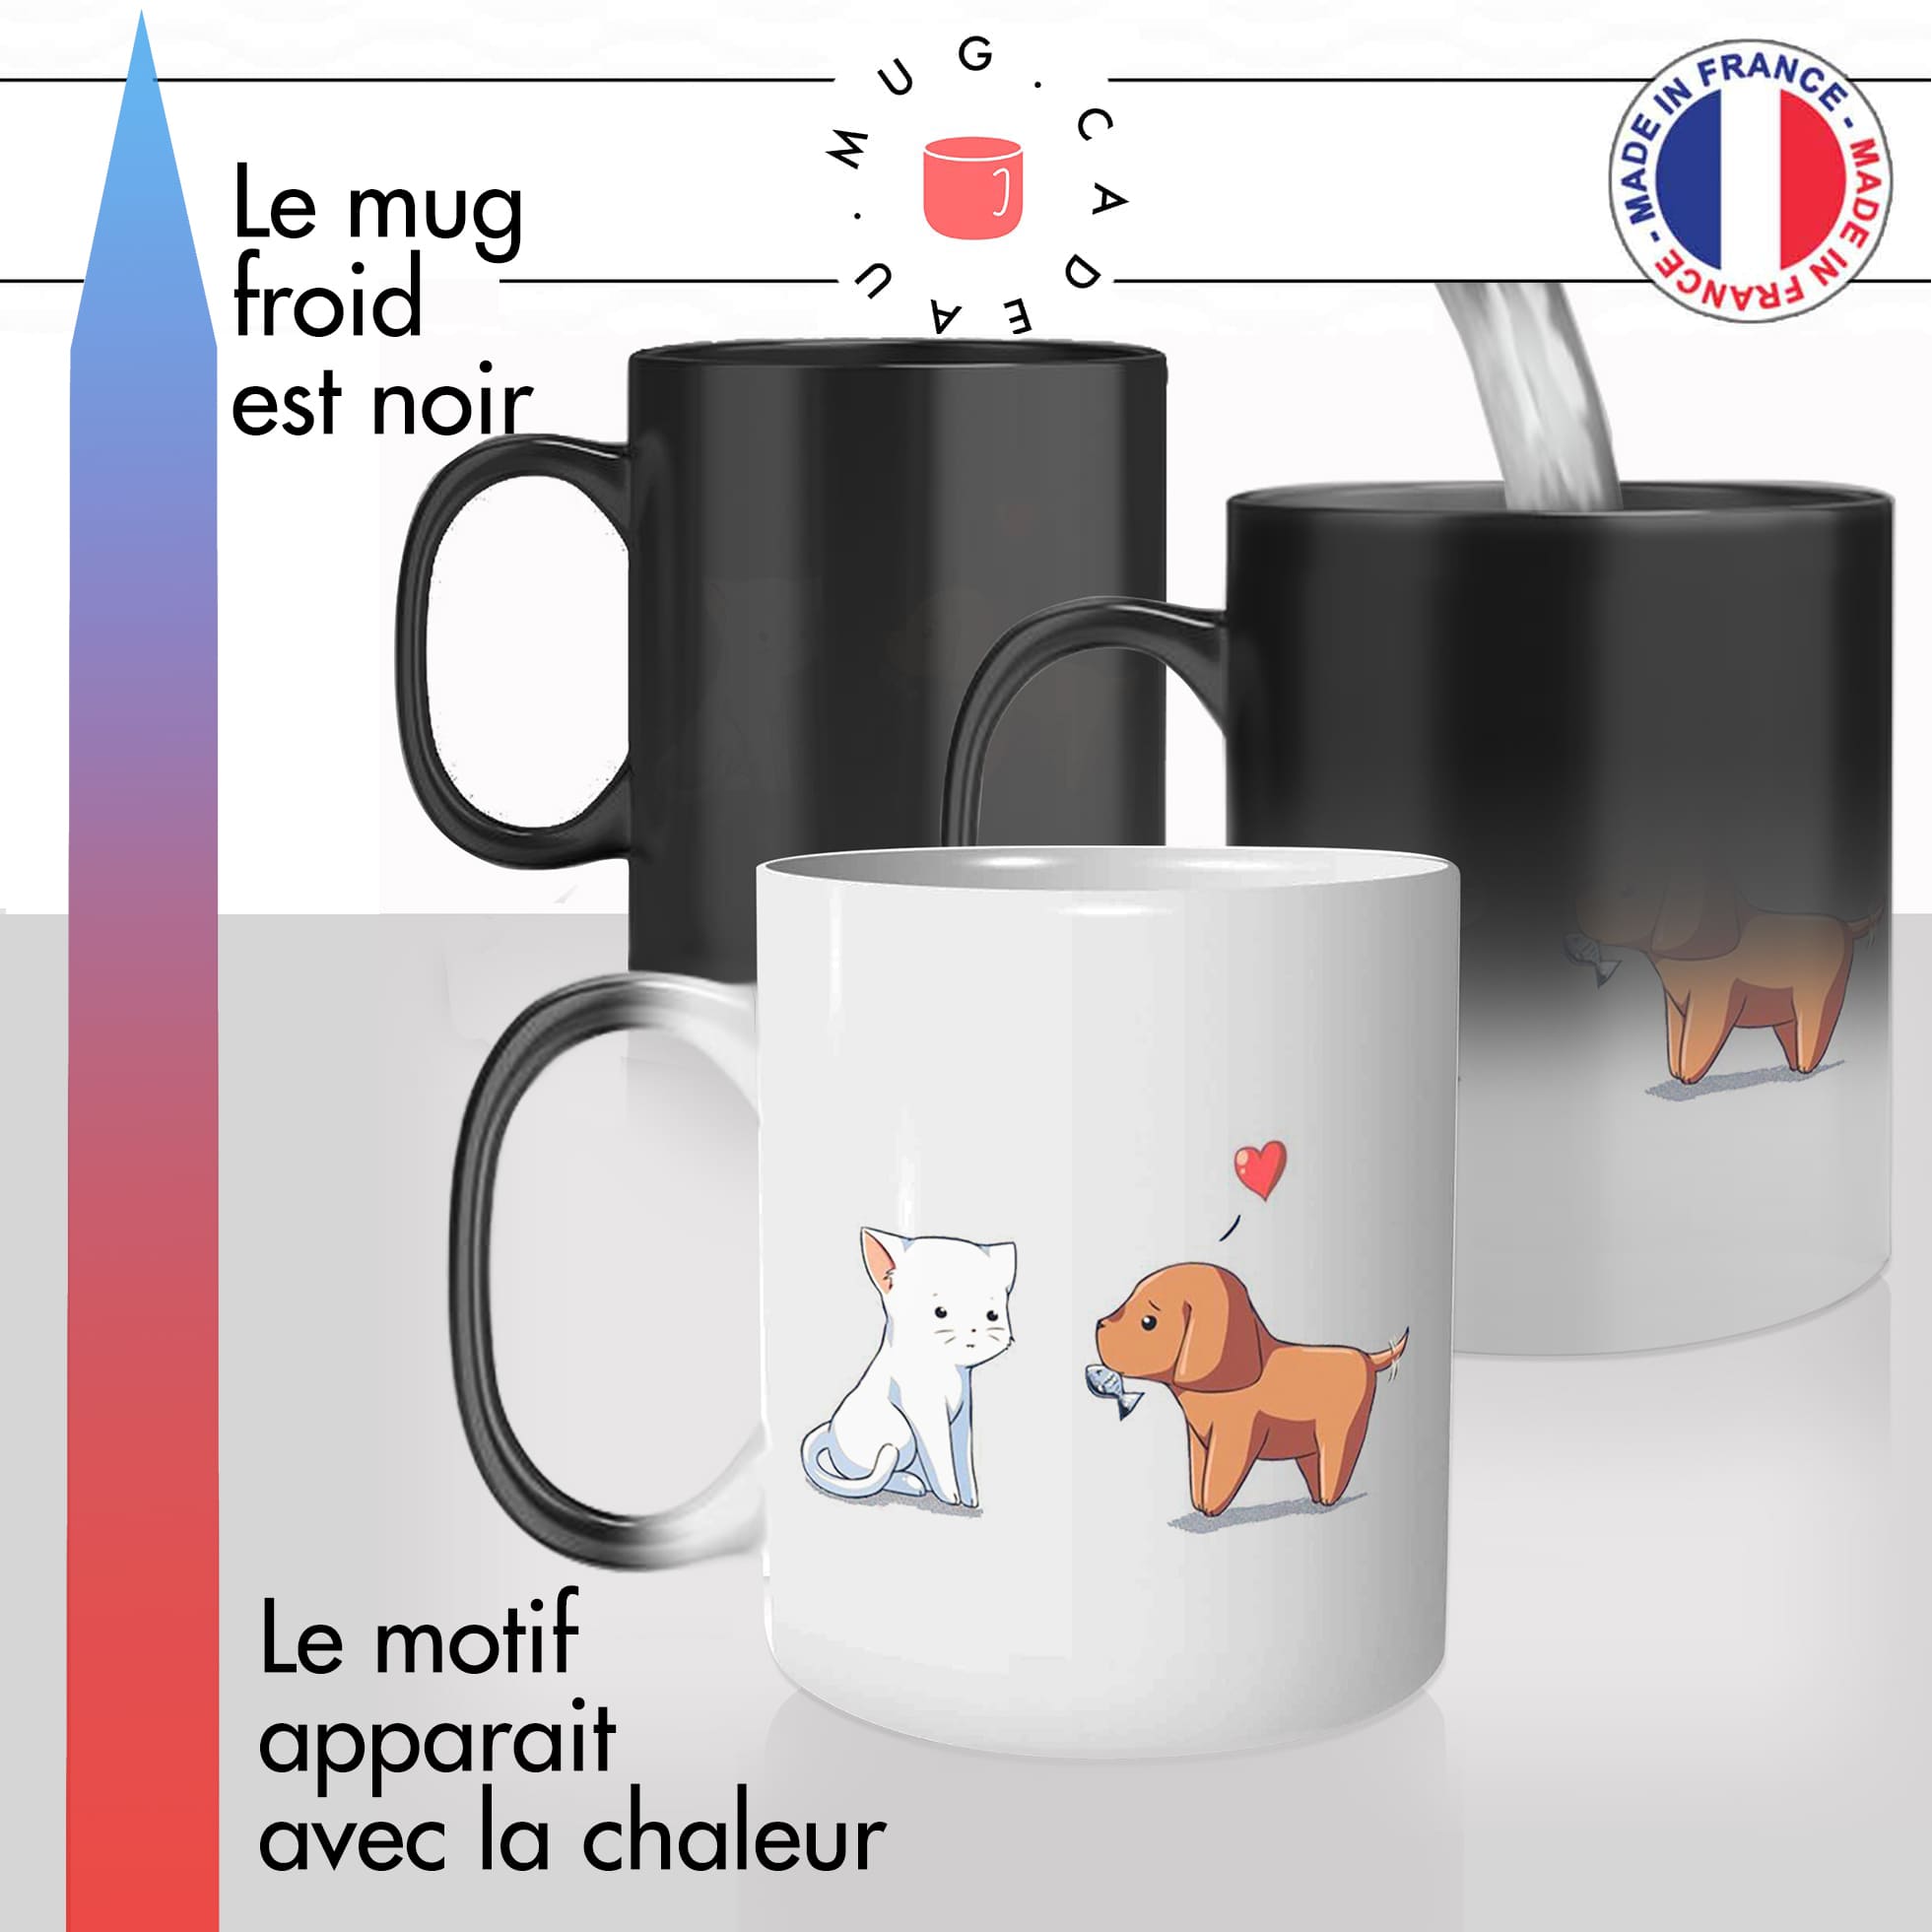 mug magique thermoreactif thermo chauffant chat et chien couple amour chaton mignon idée cadeau